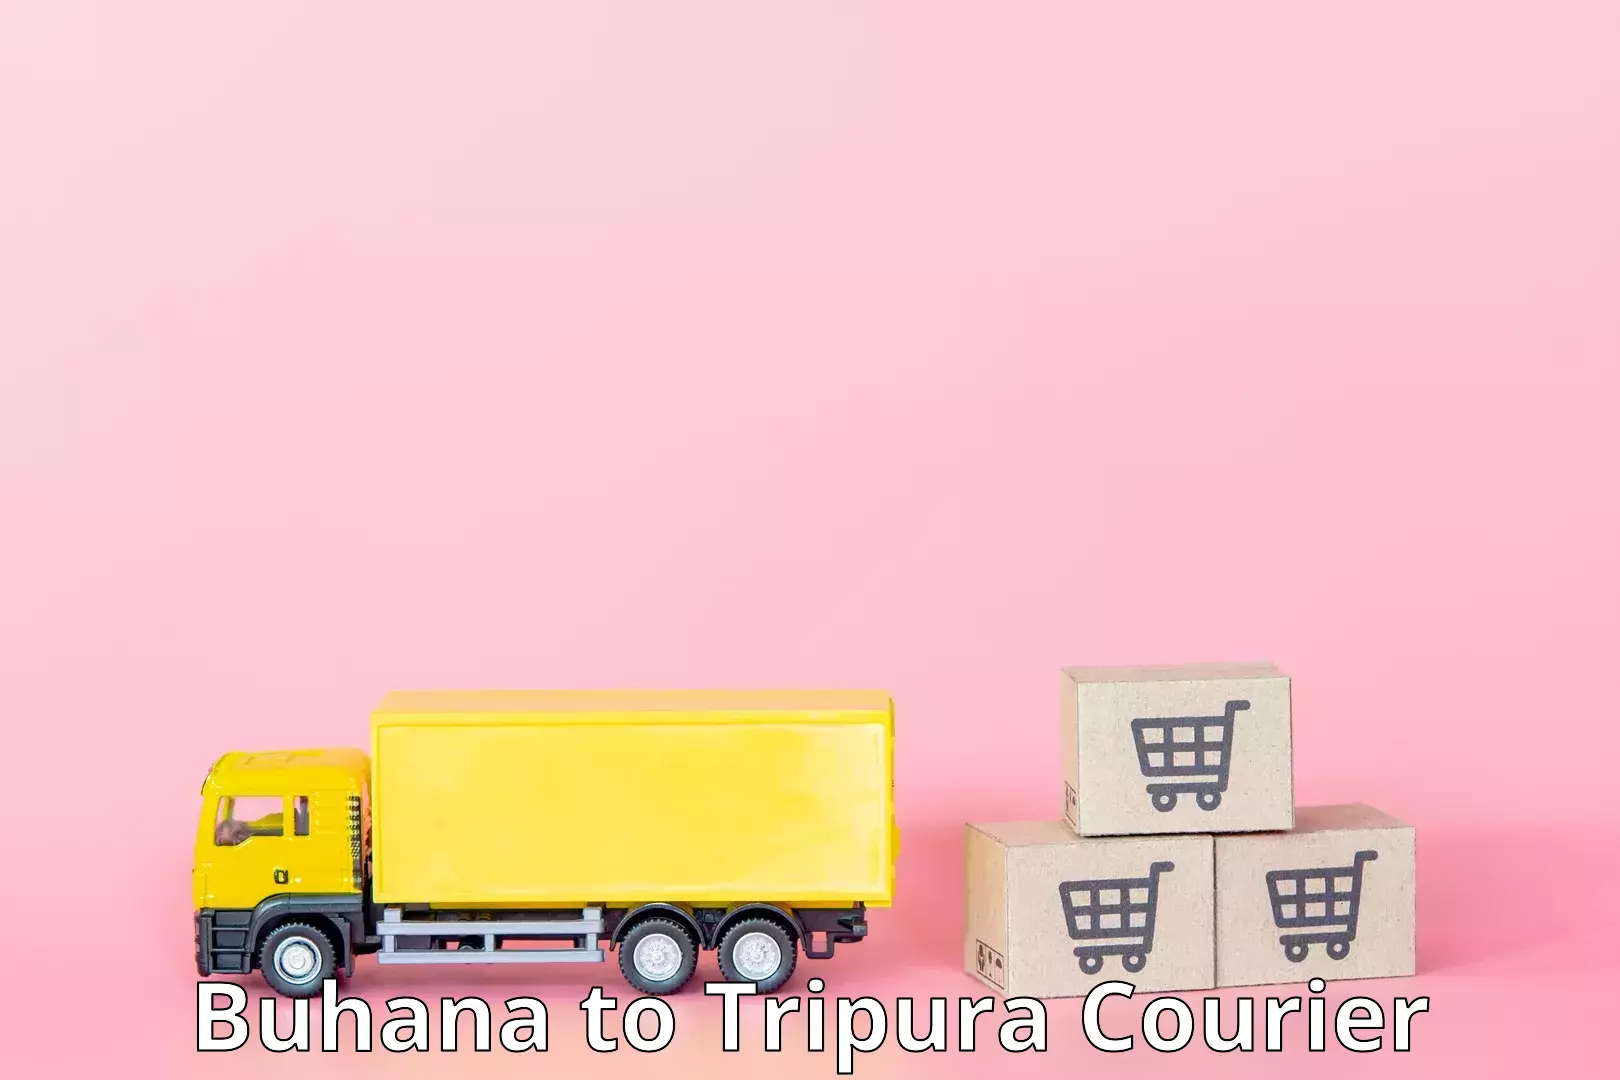 Express logistics service Buhana to Agartala